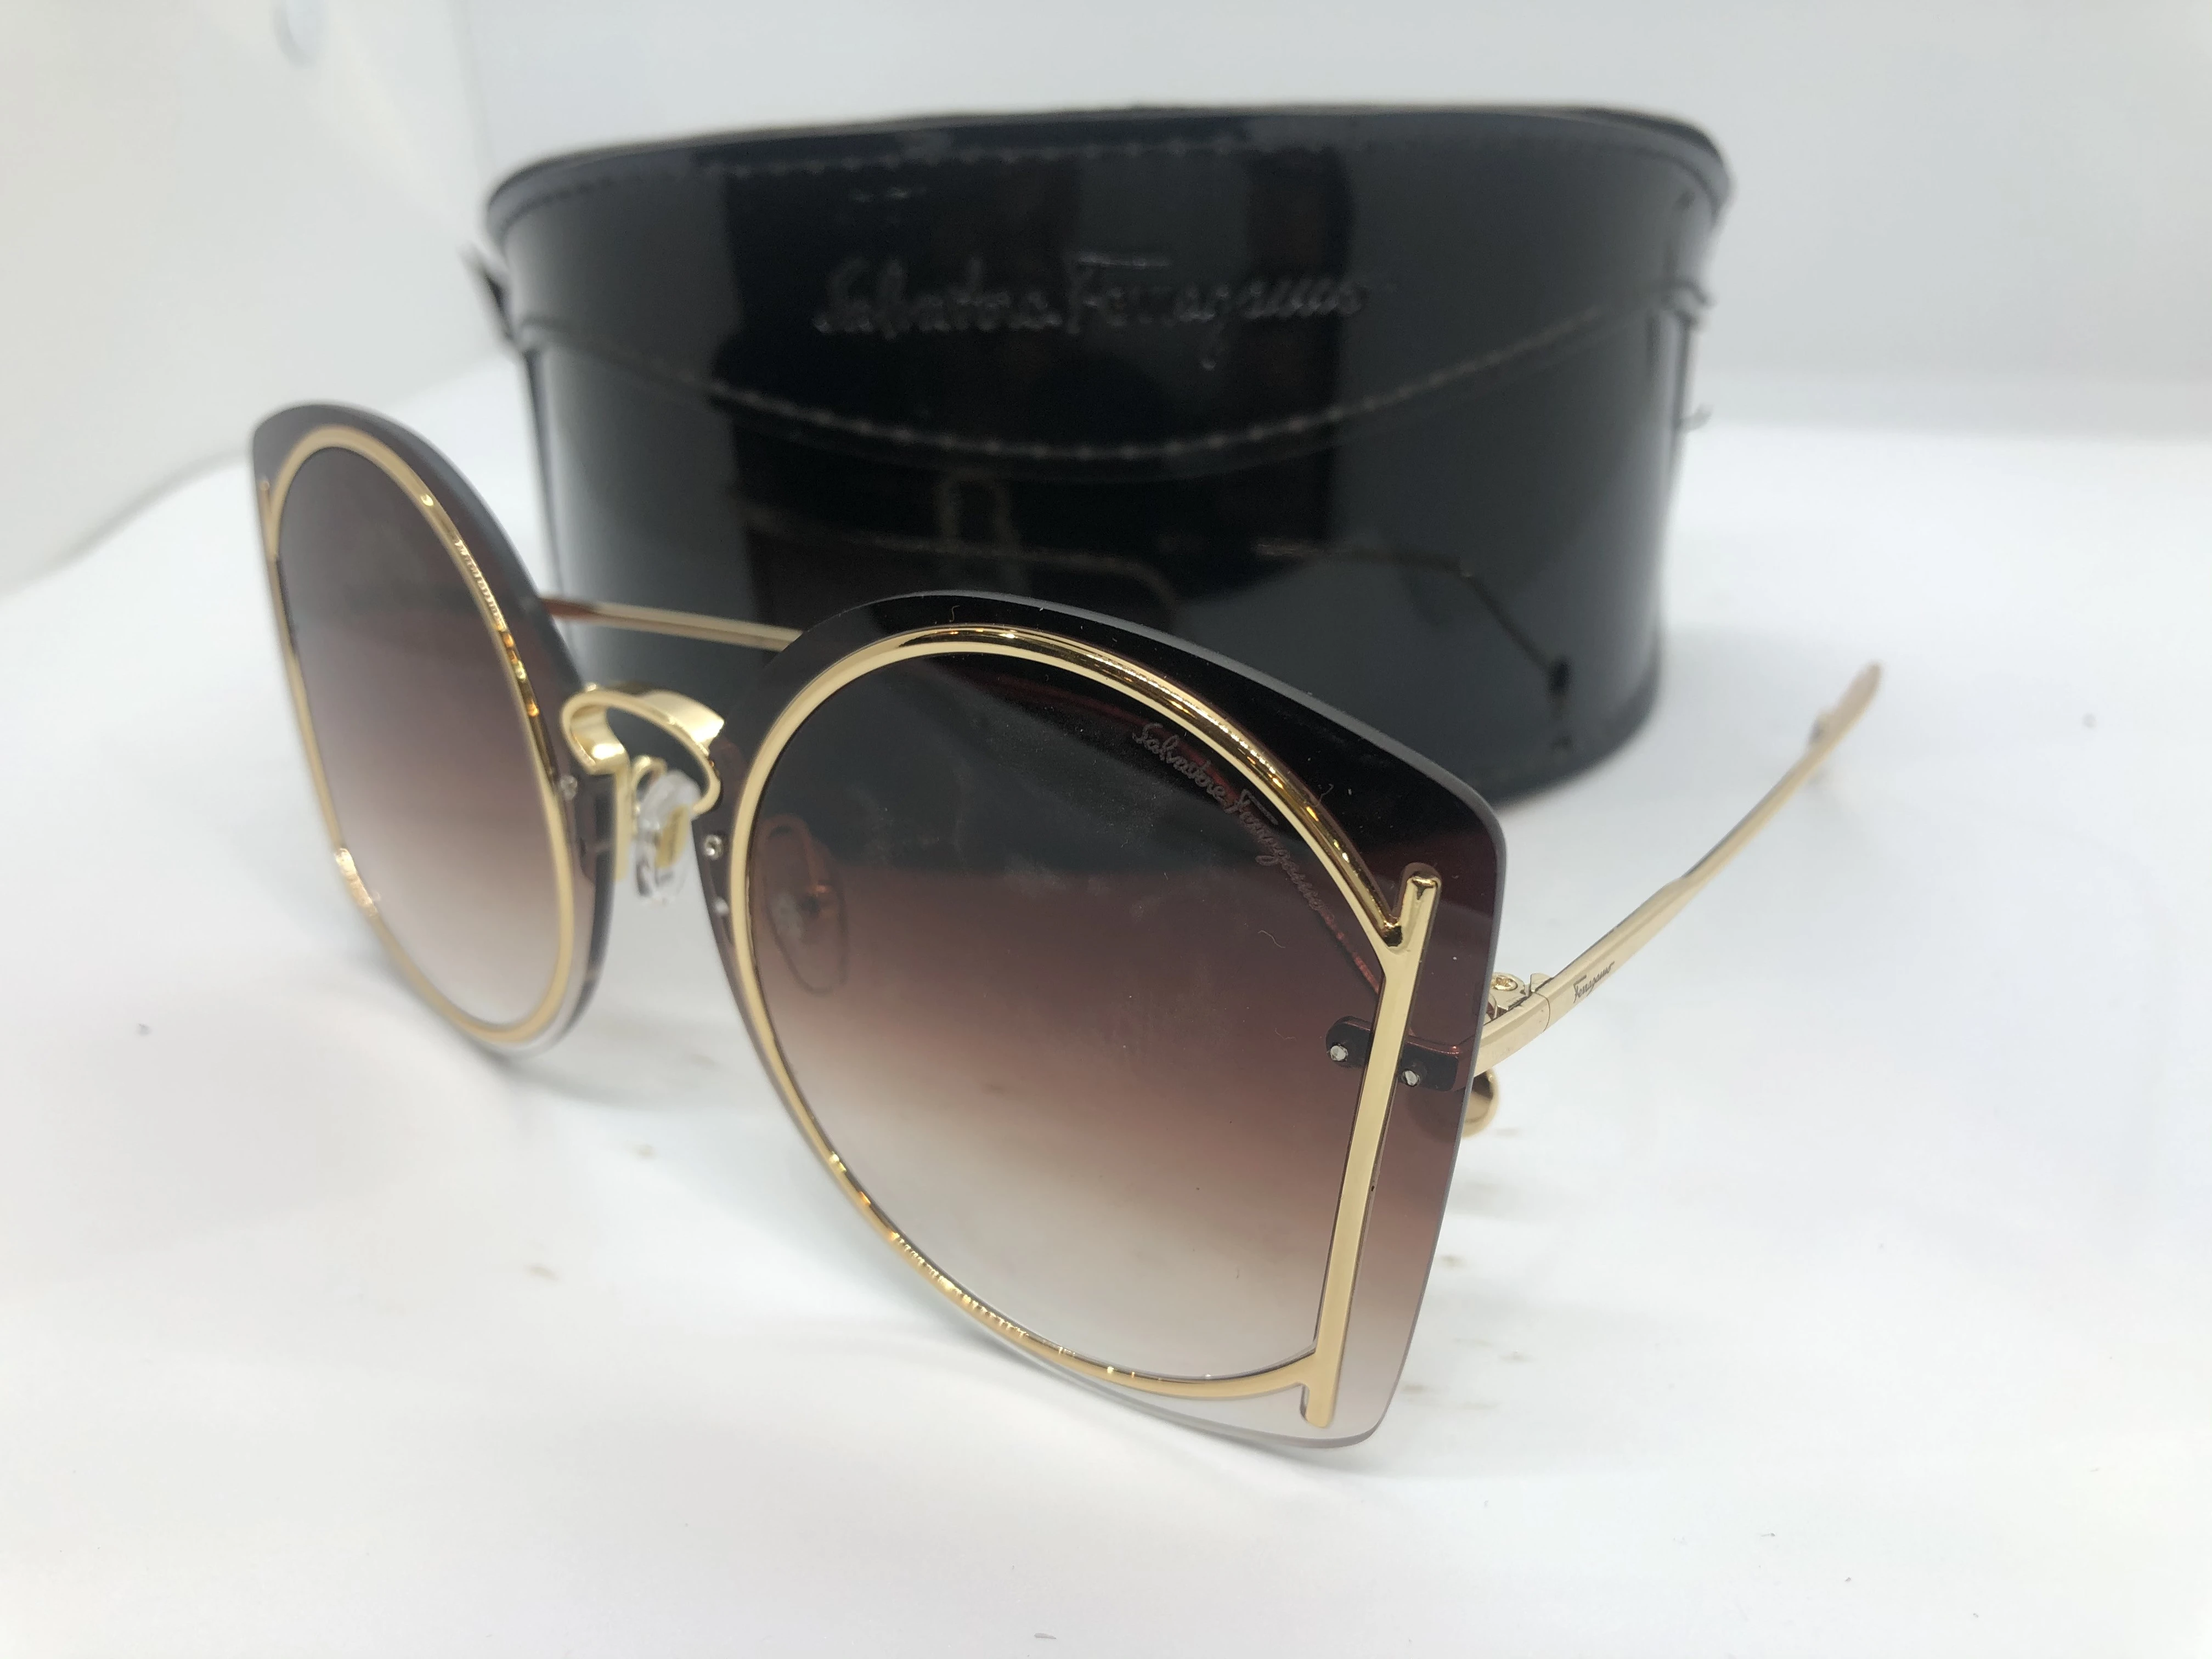 نظارة شمسية - من سلفاتوري فيراغامو- بدون اطار - وعدسات عسلي متدرجة * اطار معدن ذهبي للعدسة - وزراع معدن ذهبي - حريمي